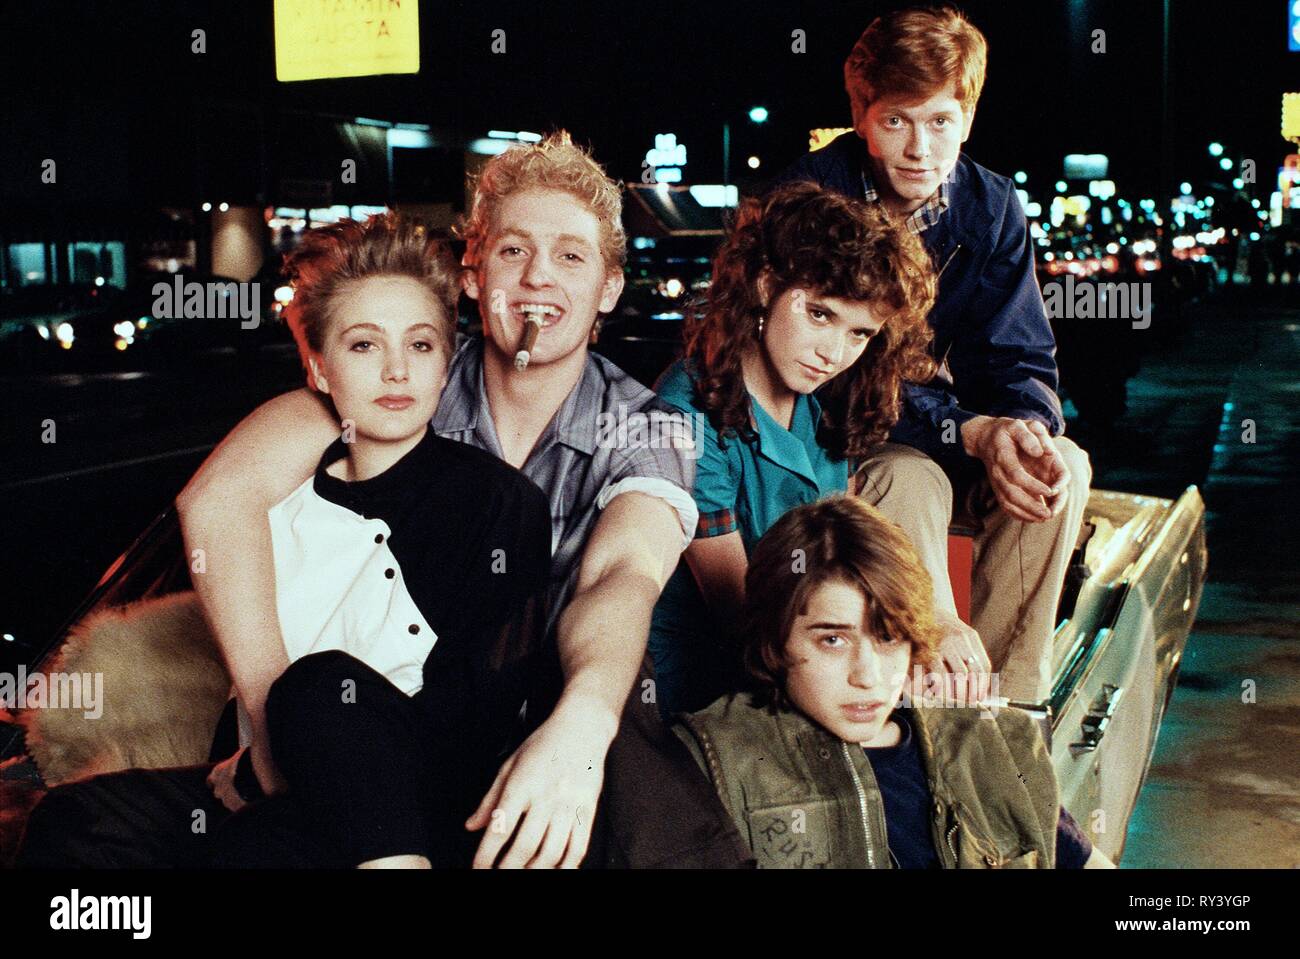 WRIGHT,PENN,THOMPSON,MITCHELL-SMITH,STOLTZ, THE WILD LIFE, 1984 Stock Photo